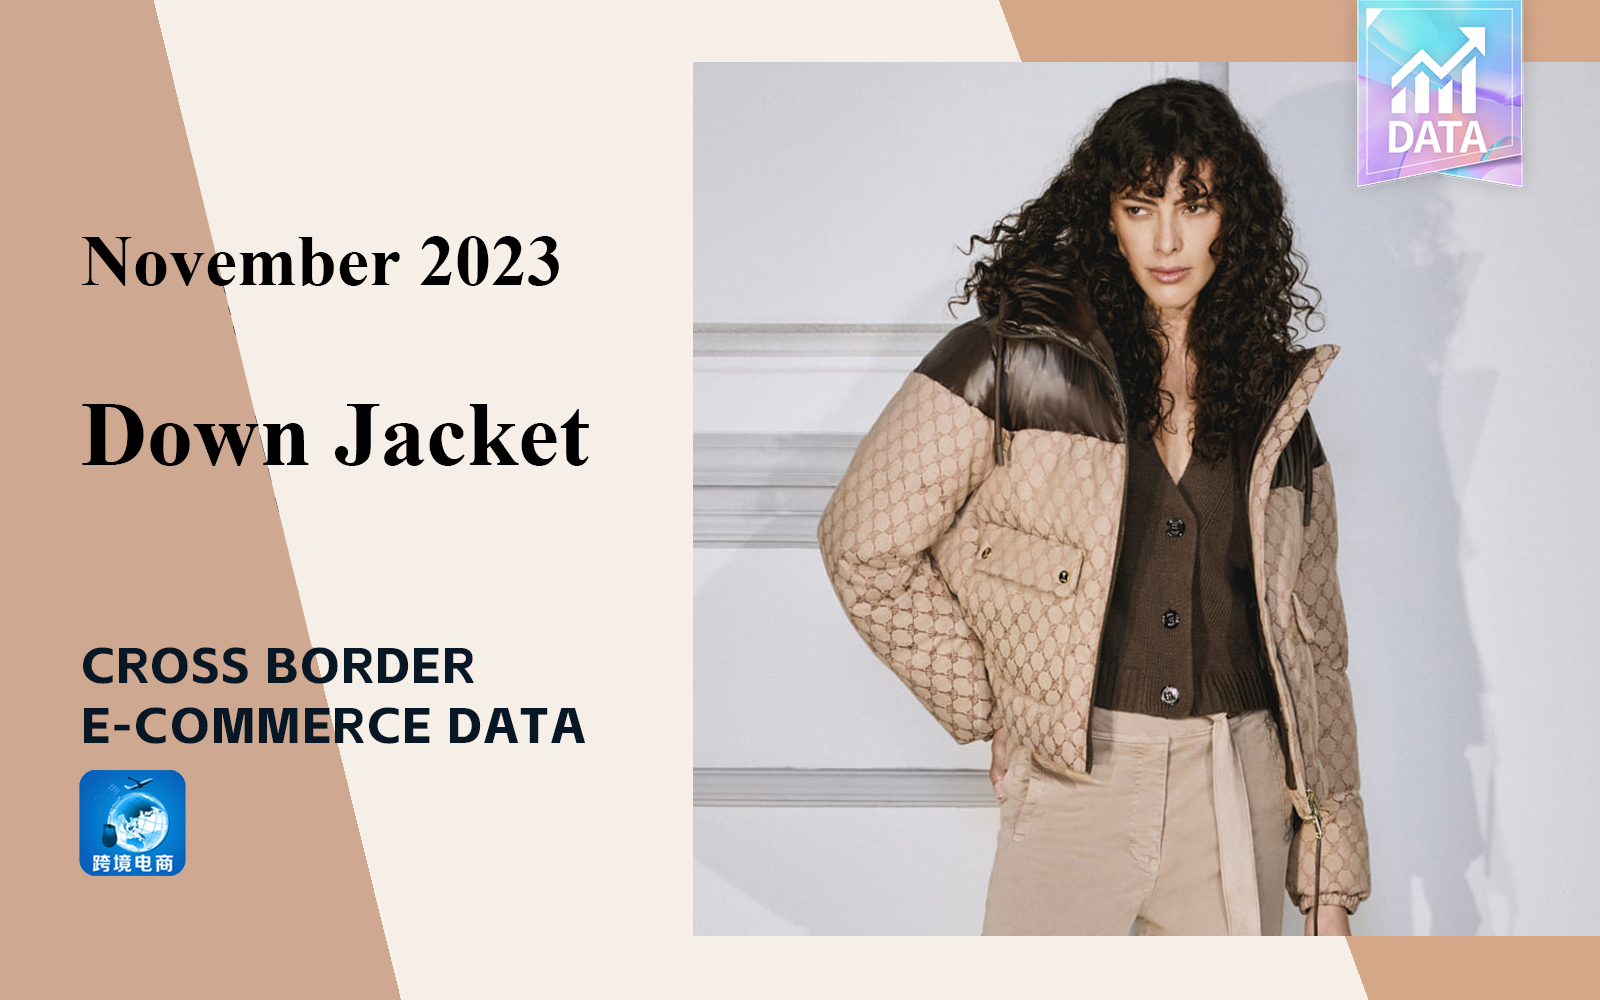 The Cross-Border E-Commerce Data Analysis of Women's Down Jacket in November